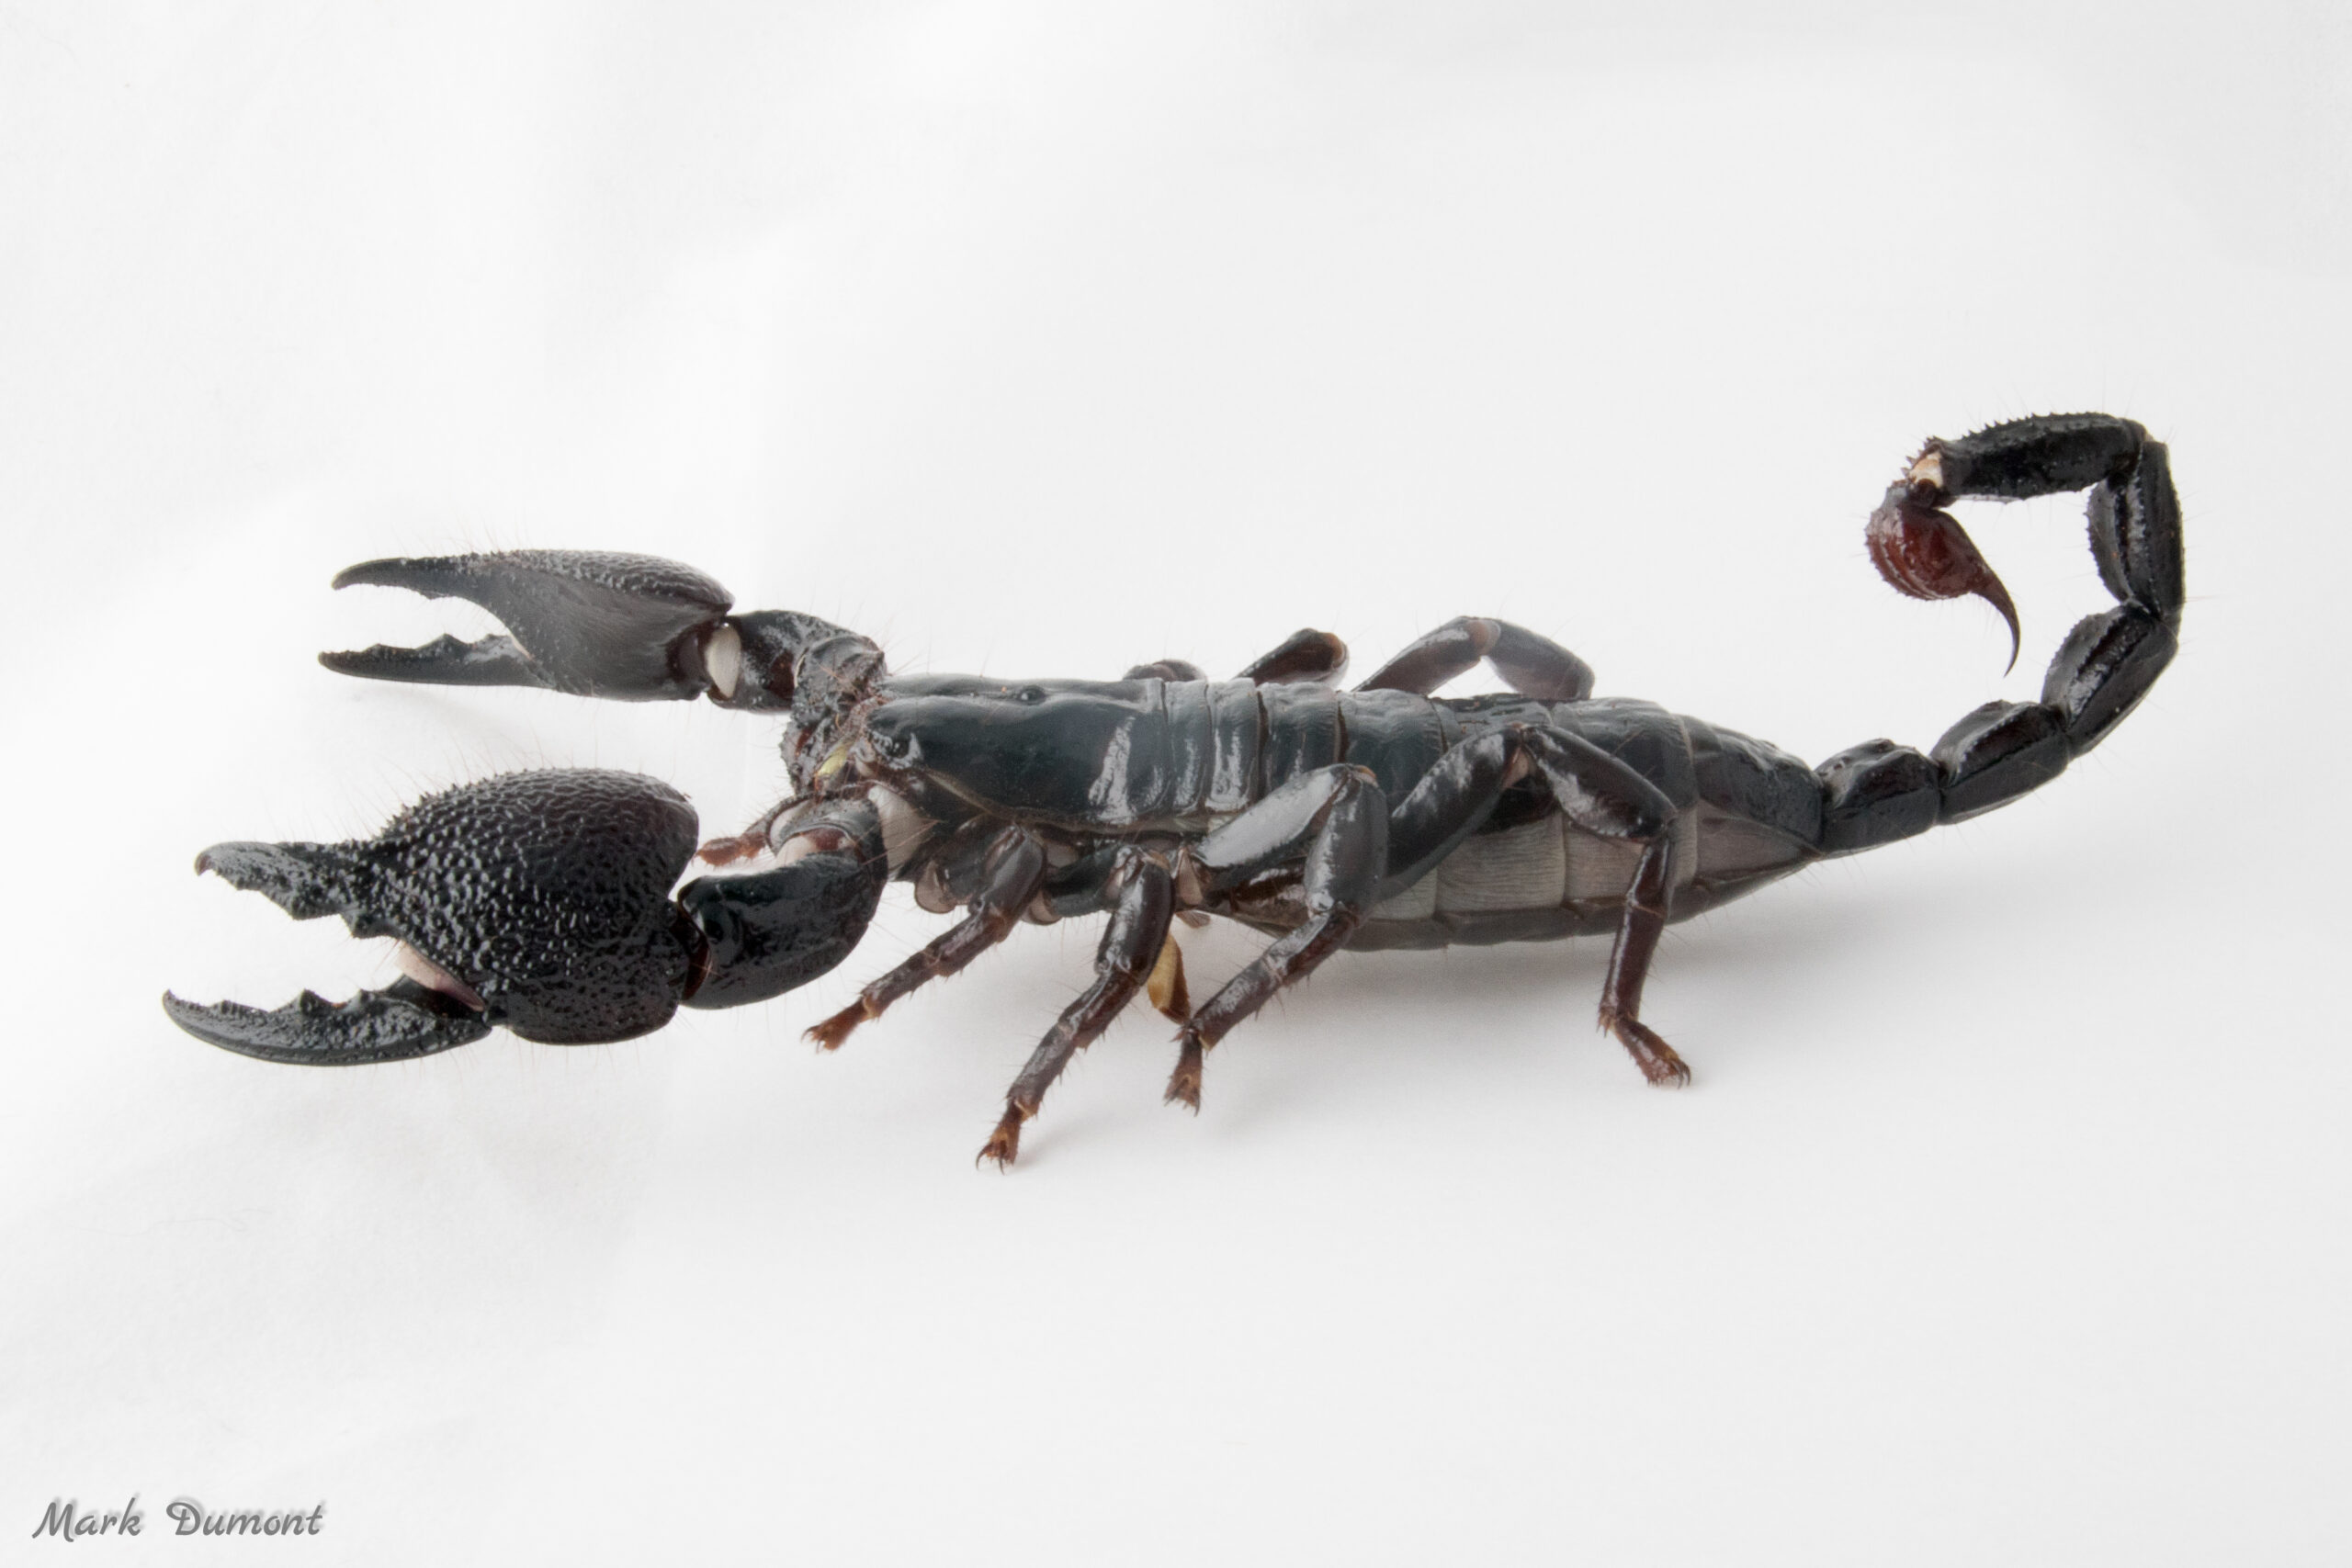 https://cincinnatizoo.org/wp-content/uploads/2011/02/emperor-scorpion-1-scaled.jpg